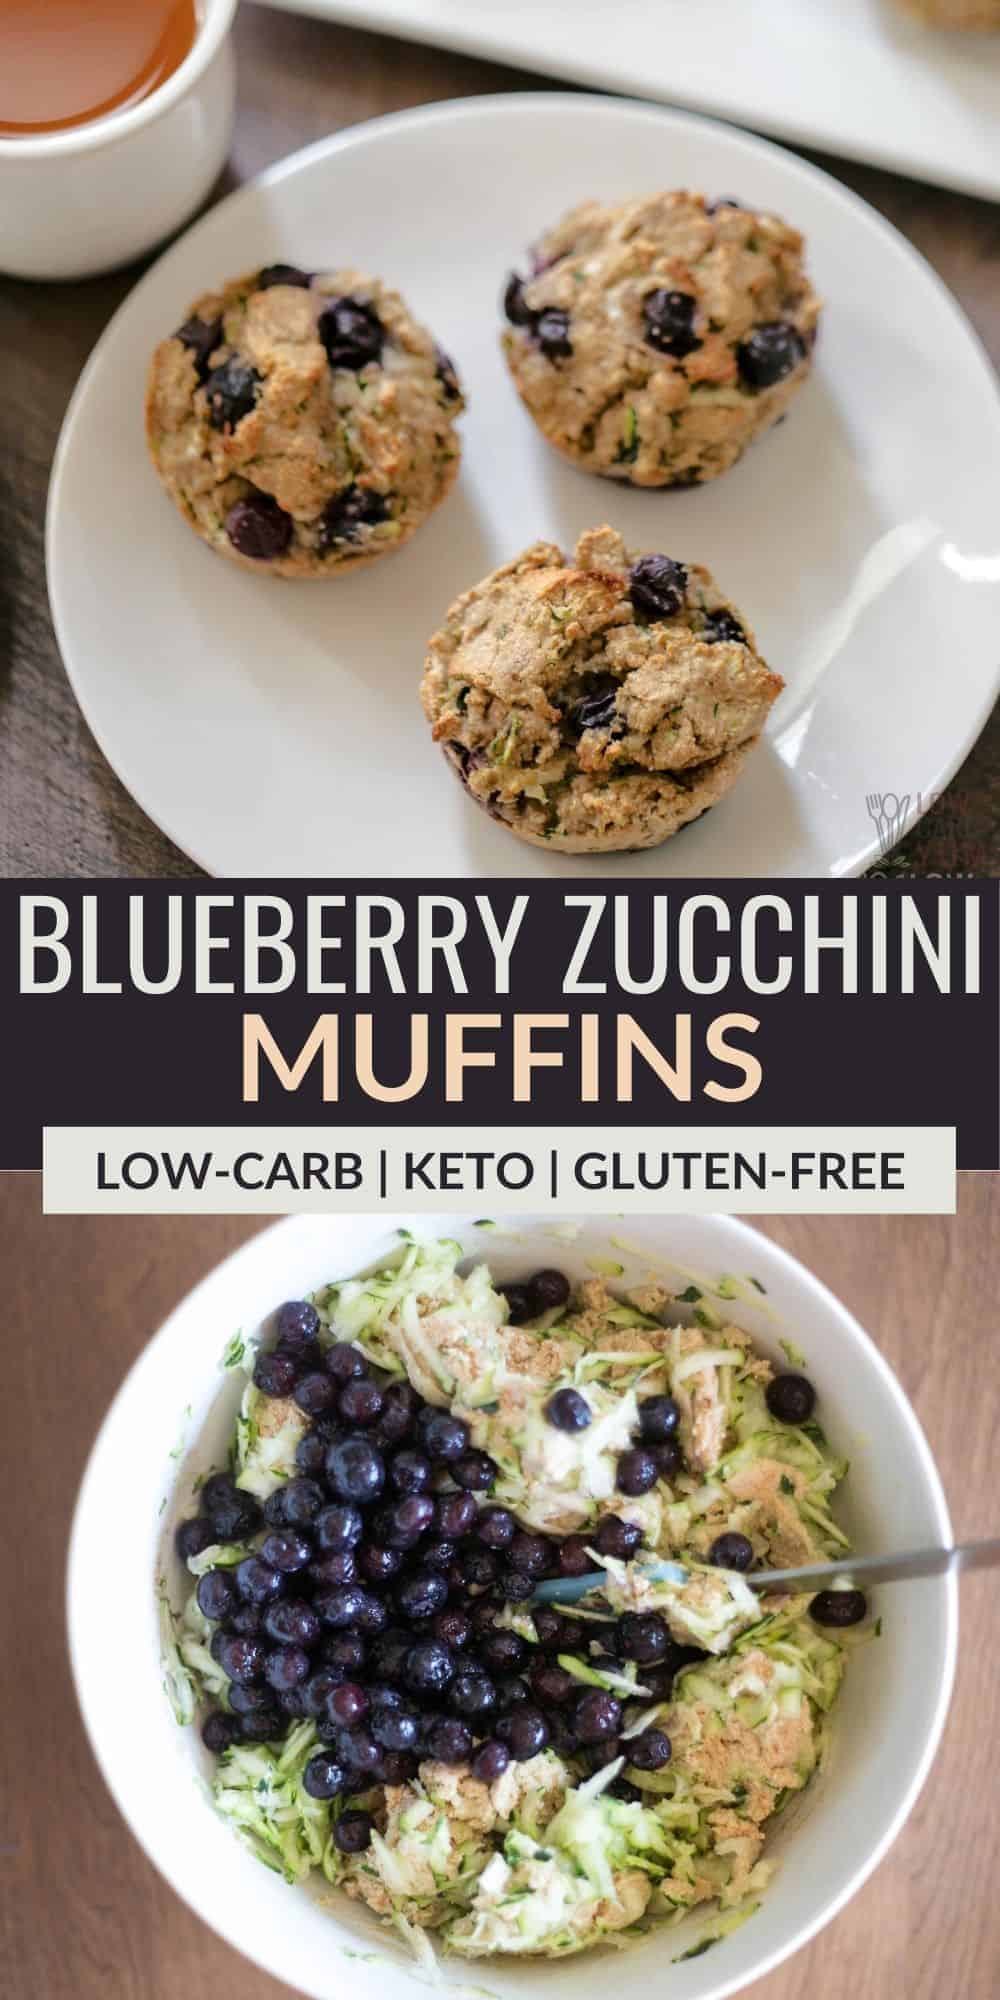 blueberry zucchini muffins pinterest image.